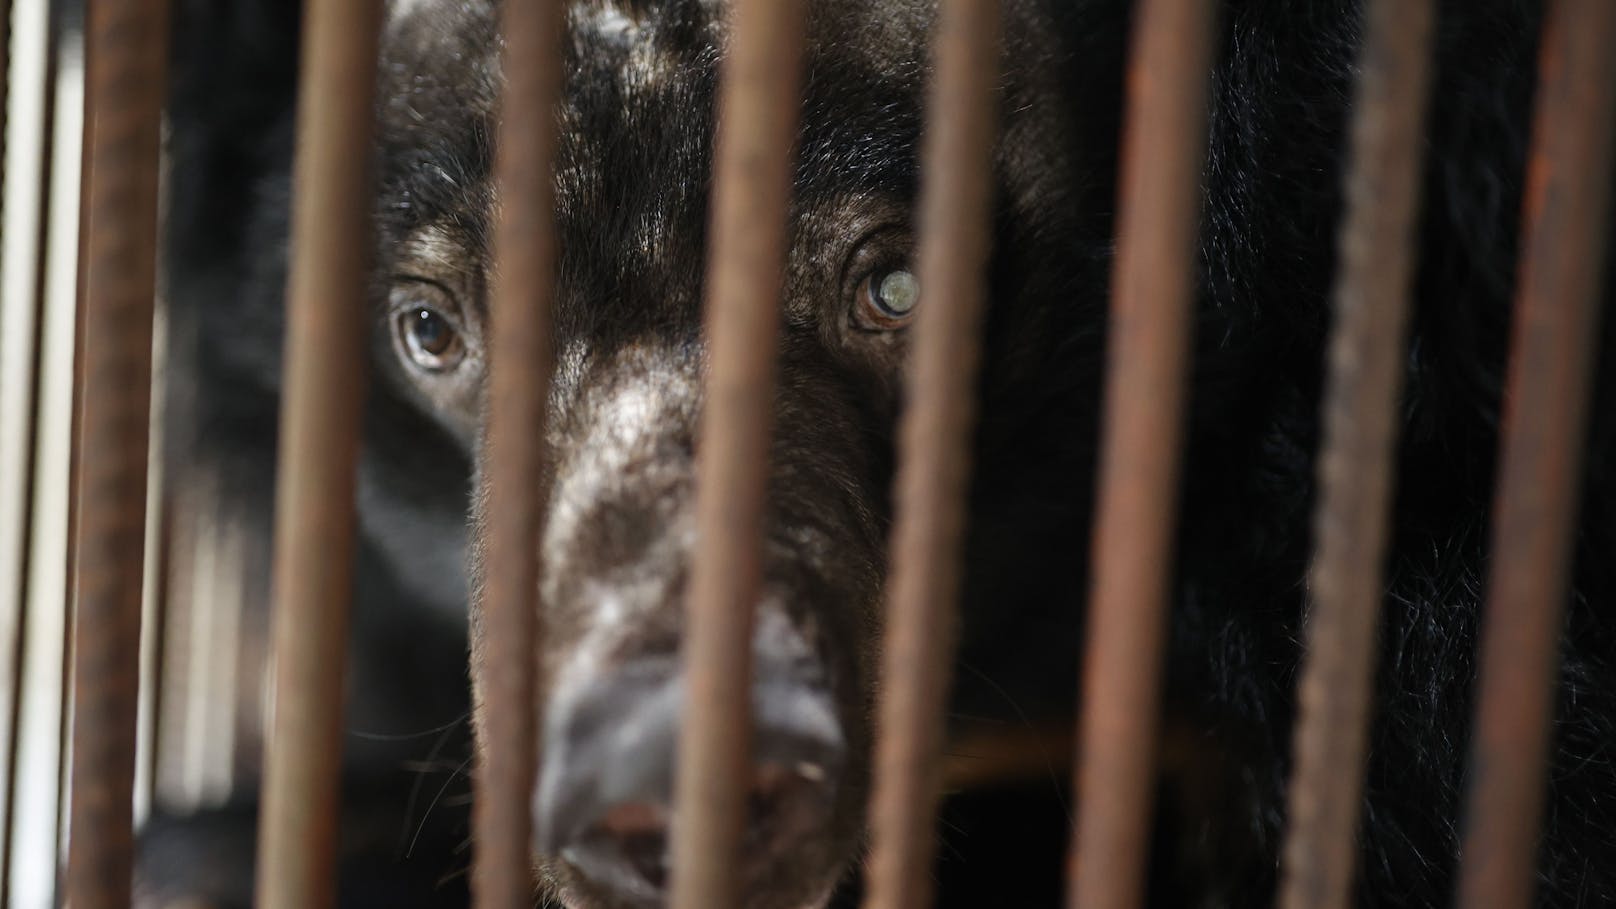 Tierschutzorganisation Vier Pfoten beschlagnahmten den illegalen "Gallenbären" und brachten sie in einen der Bärenwälder.